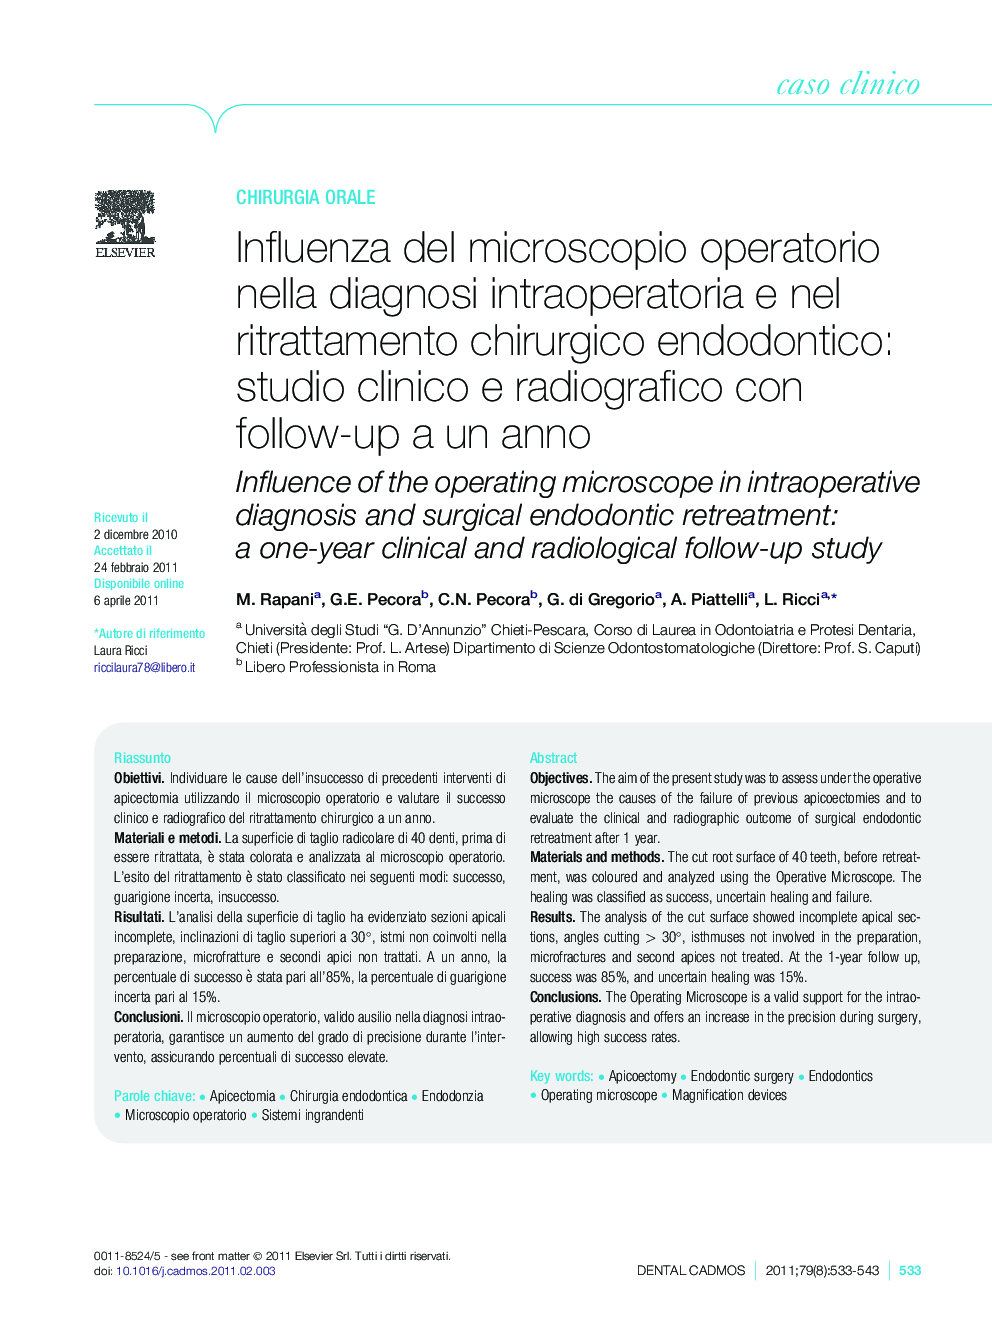 Influenza del microscopio operatorio nella diagnosi intraoperatoria e nel ritrattamento chirurgico endodontico: studio clinico e radiografico con follow-up a un anno